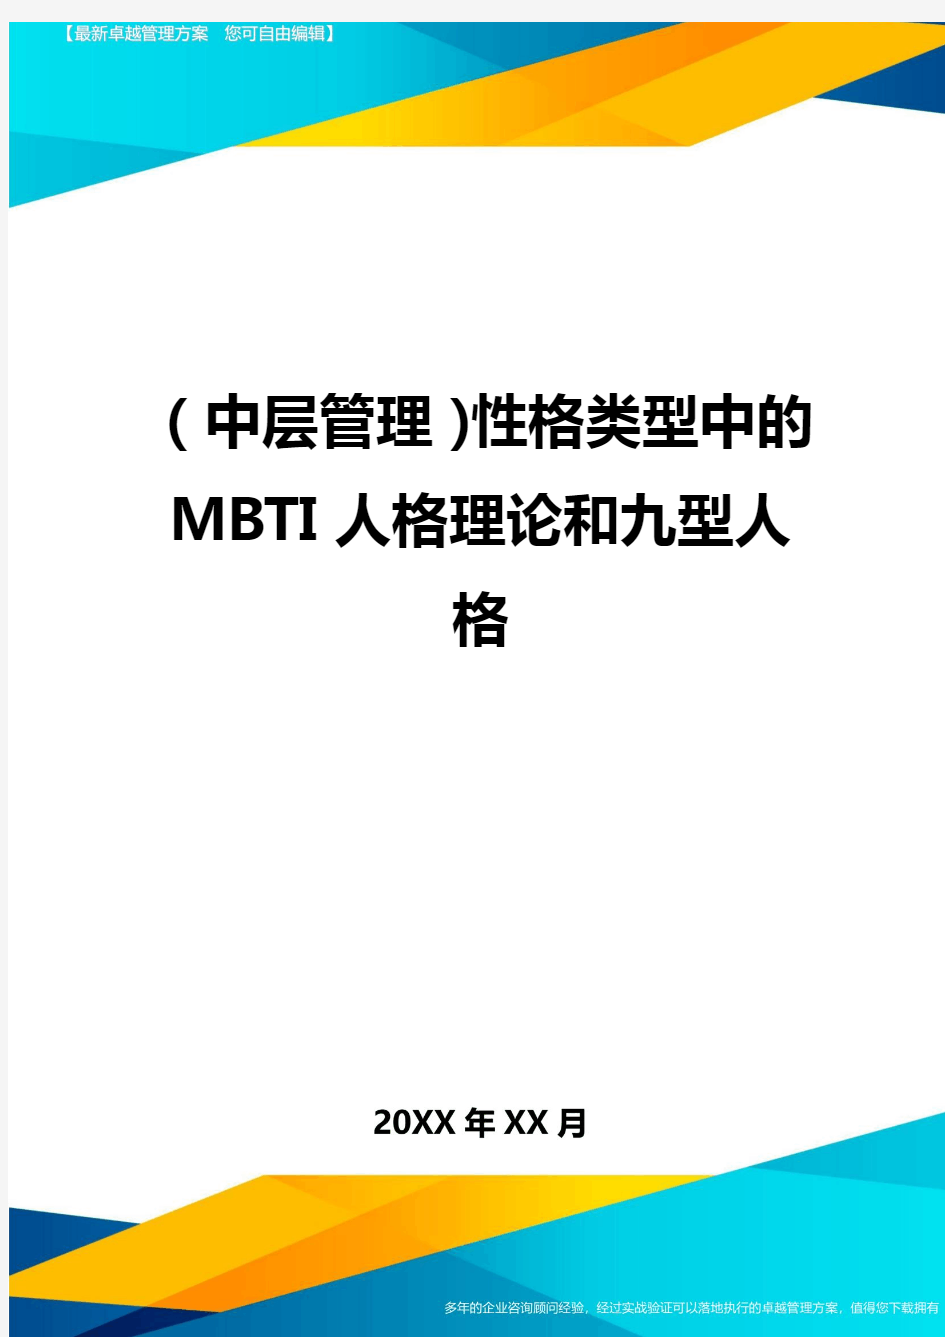 2020年(中层管理)性格类型中的MBTI人格理论和九型人格